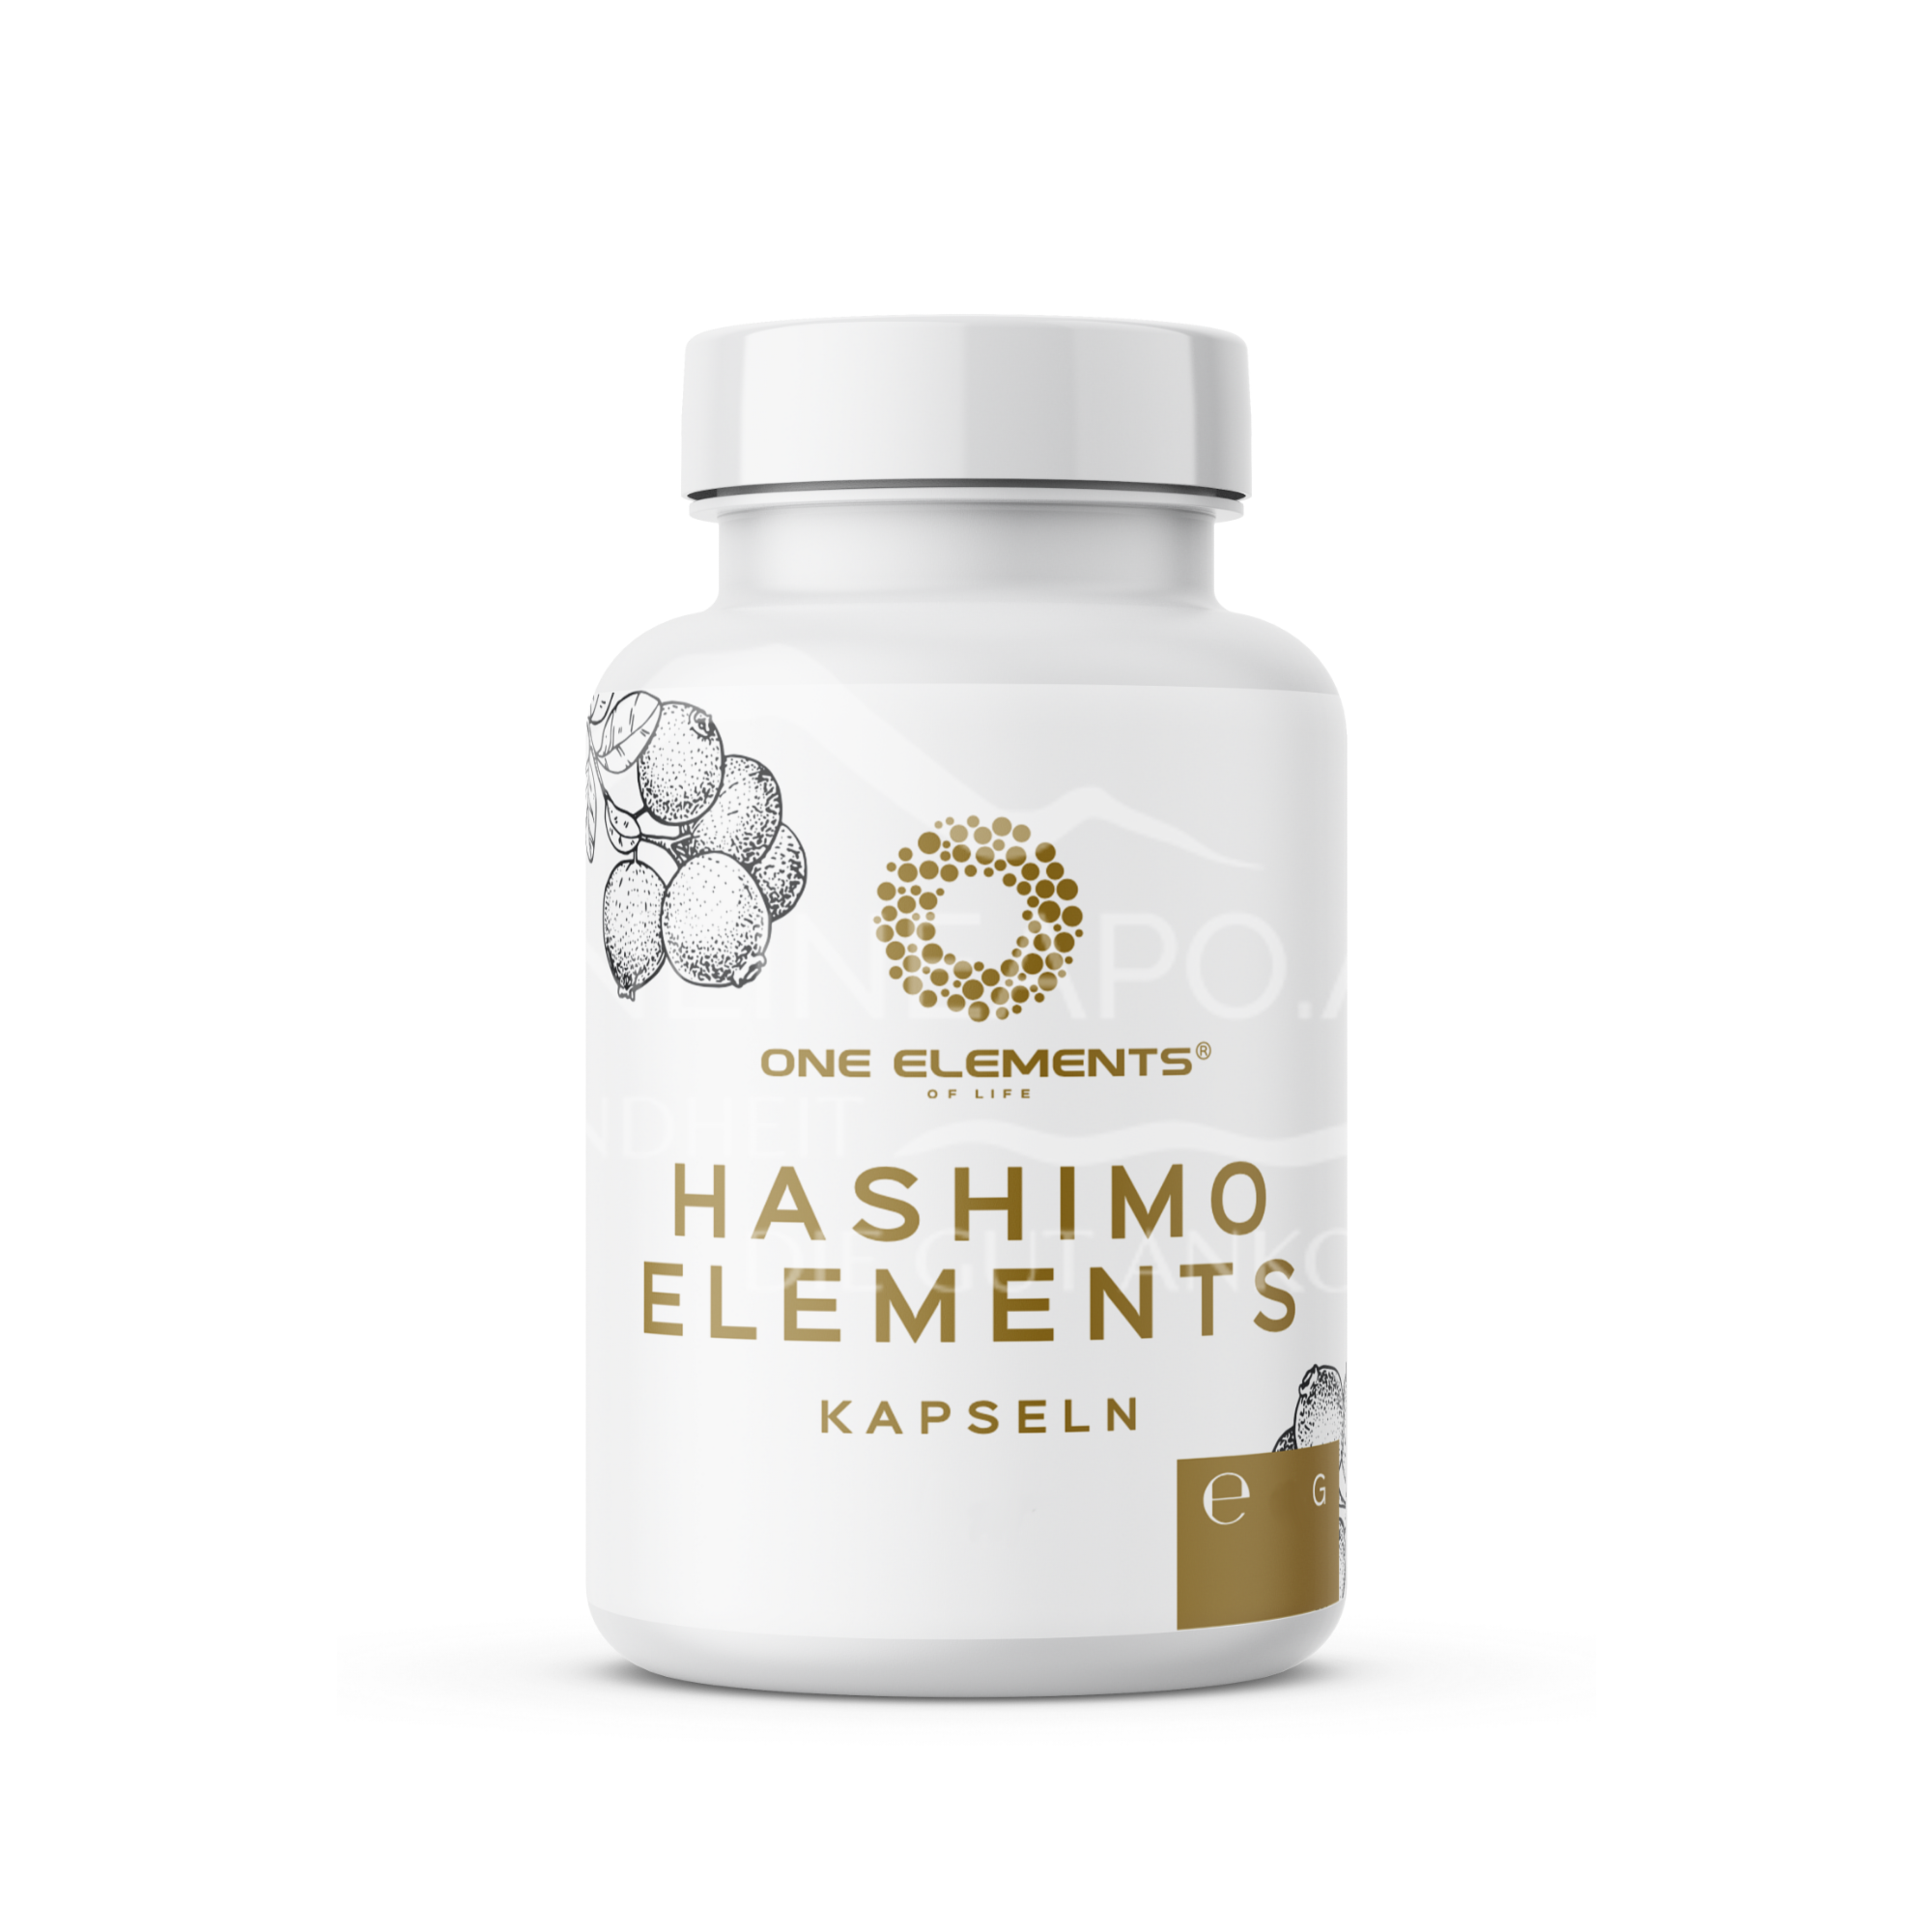 One Elements Hashimo Elements Kapseln